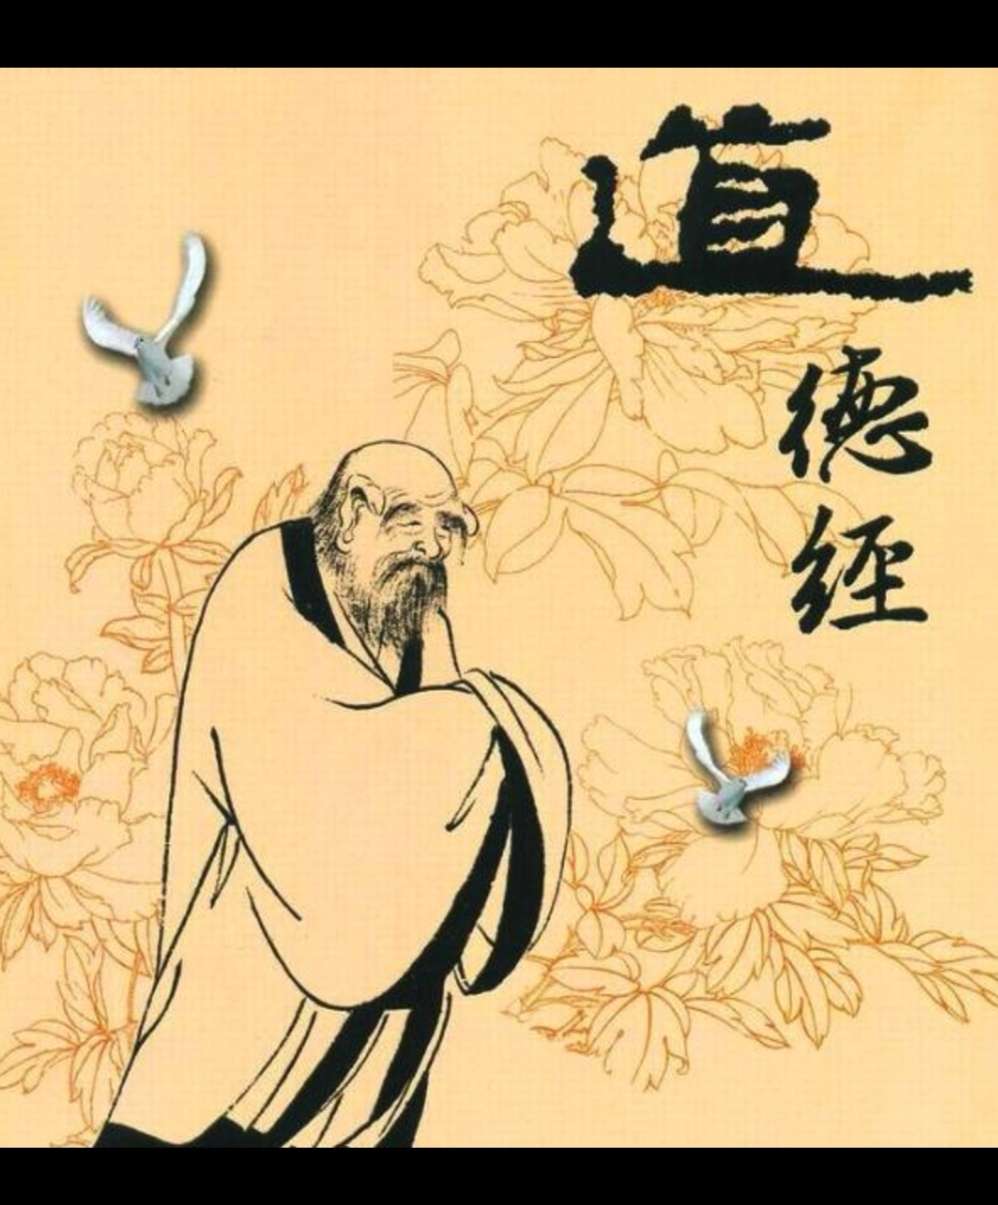 儒家,道家,佛家哲学的核心思想_儒家道家墨家法家兵家的中心思想_道家思想与儒家思想的区别(1)